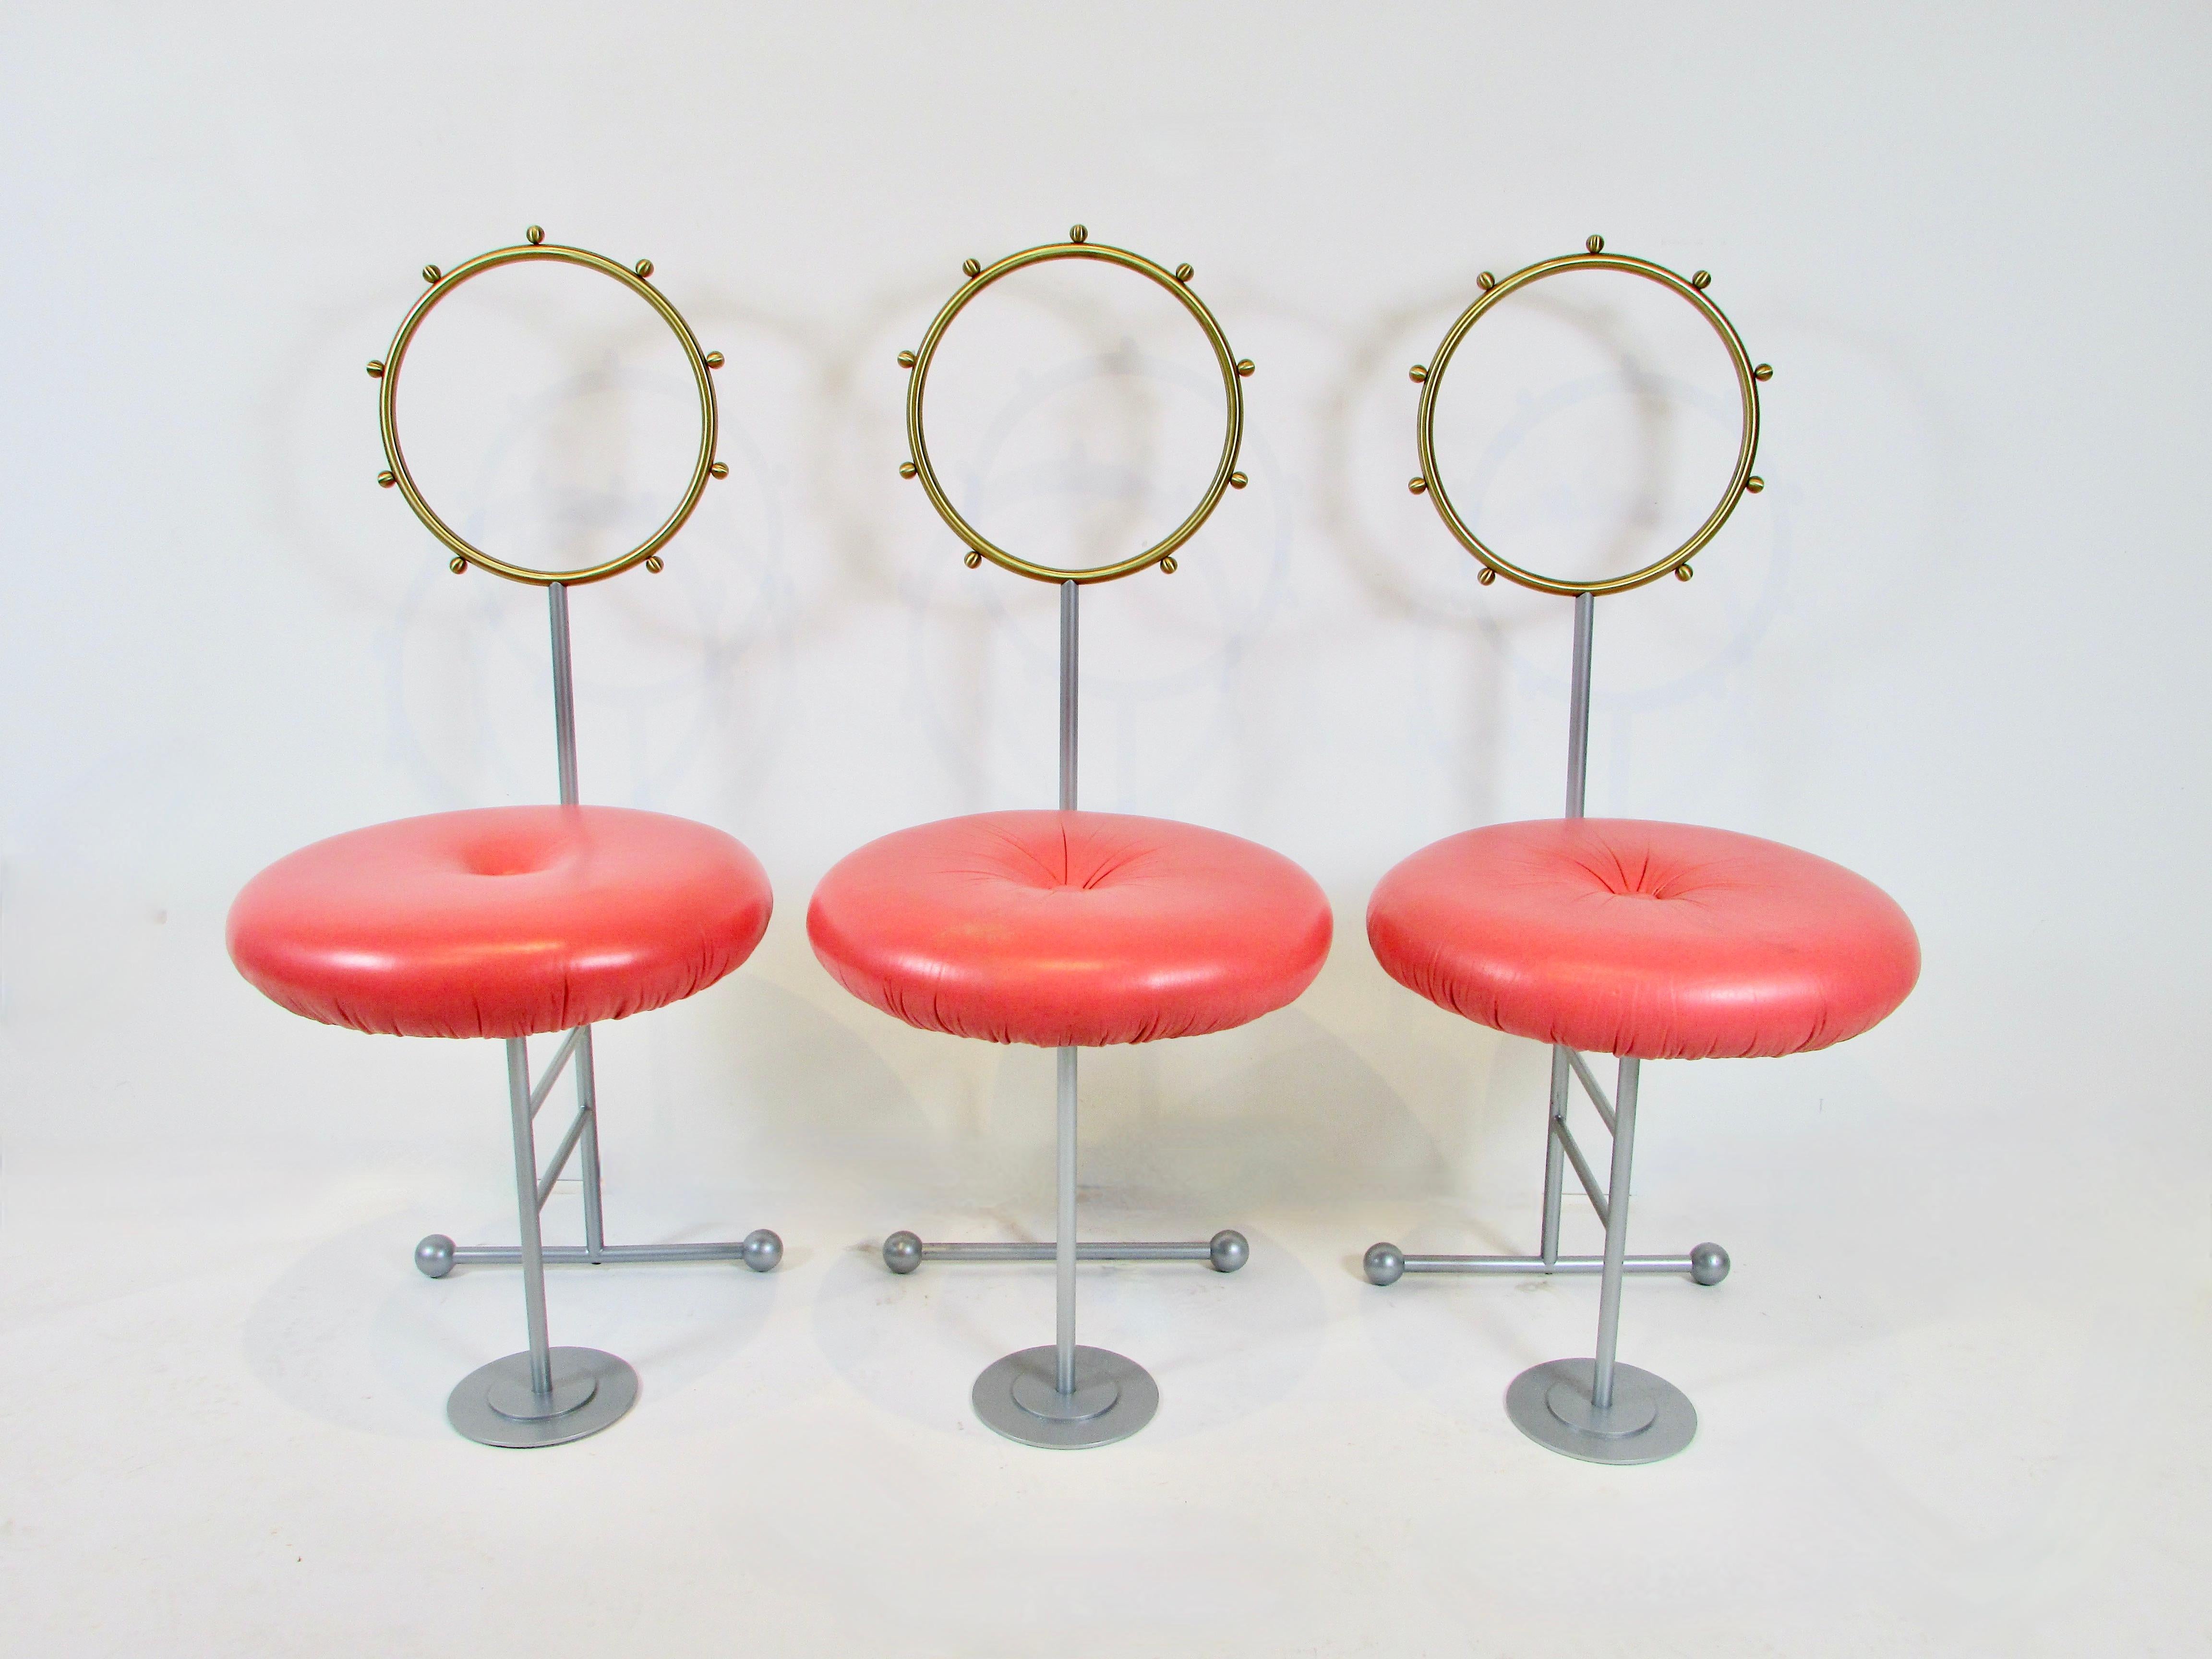  Drei lustige, skurrile postmoderne Beistellstühle, entworfen von Luigi Serafini für Sawaya und Moroni in Mailand, Italien.  Postmoderne Stühle im Memphis-Stil zaubern immer ein Lächeln in mein Gesicht. Die kreisförmige Rückenlehne hat einen